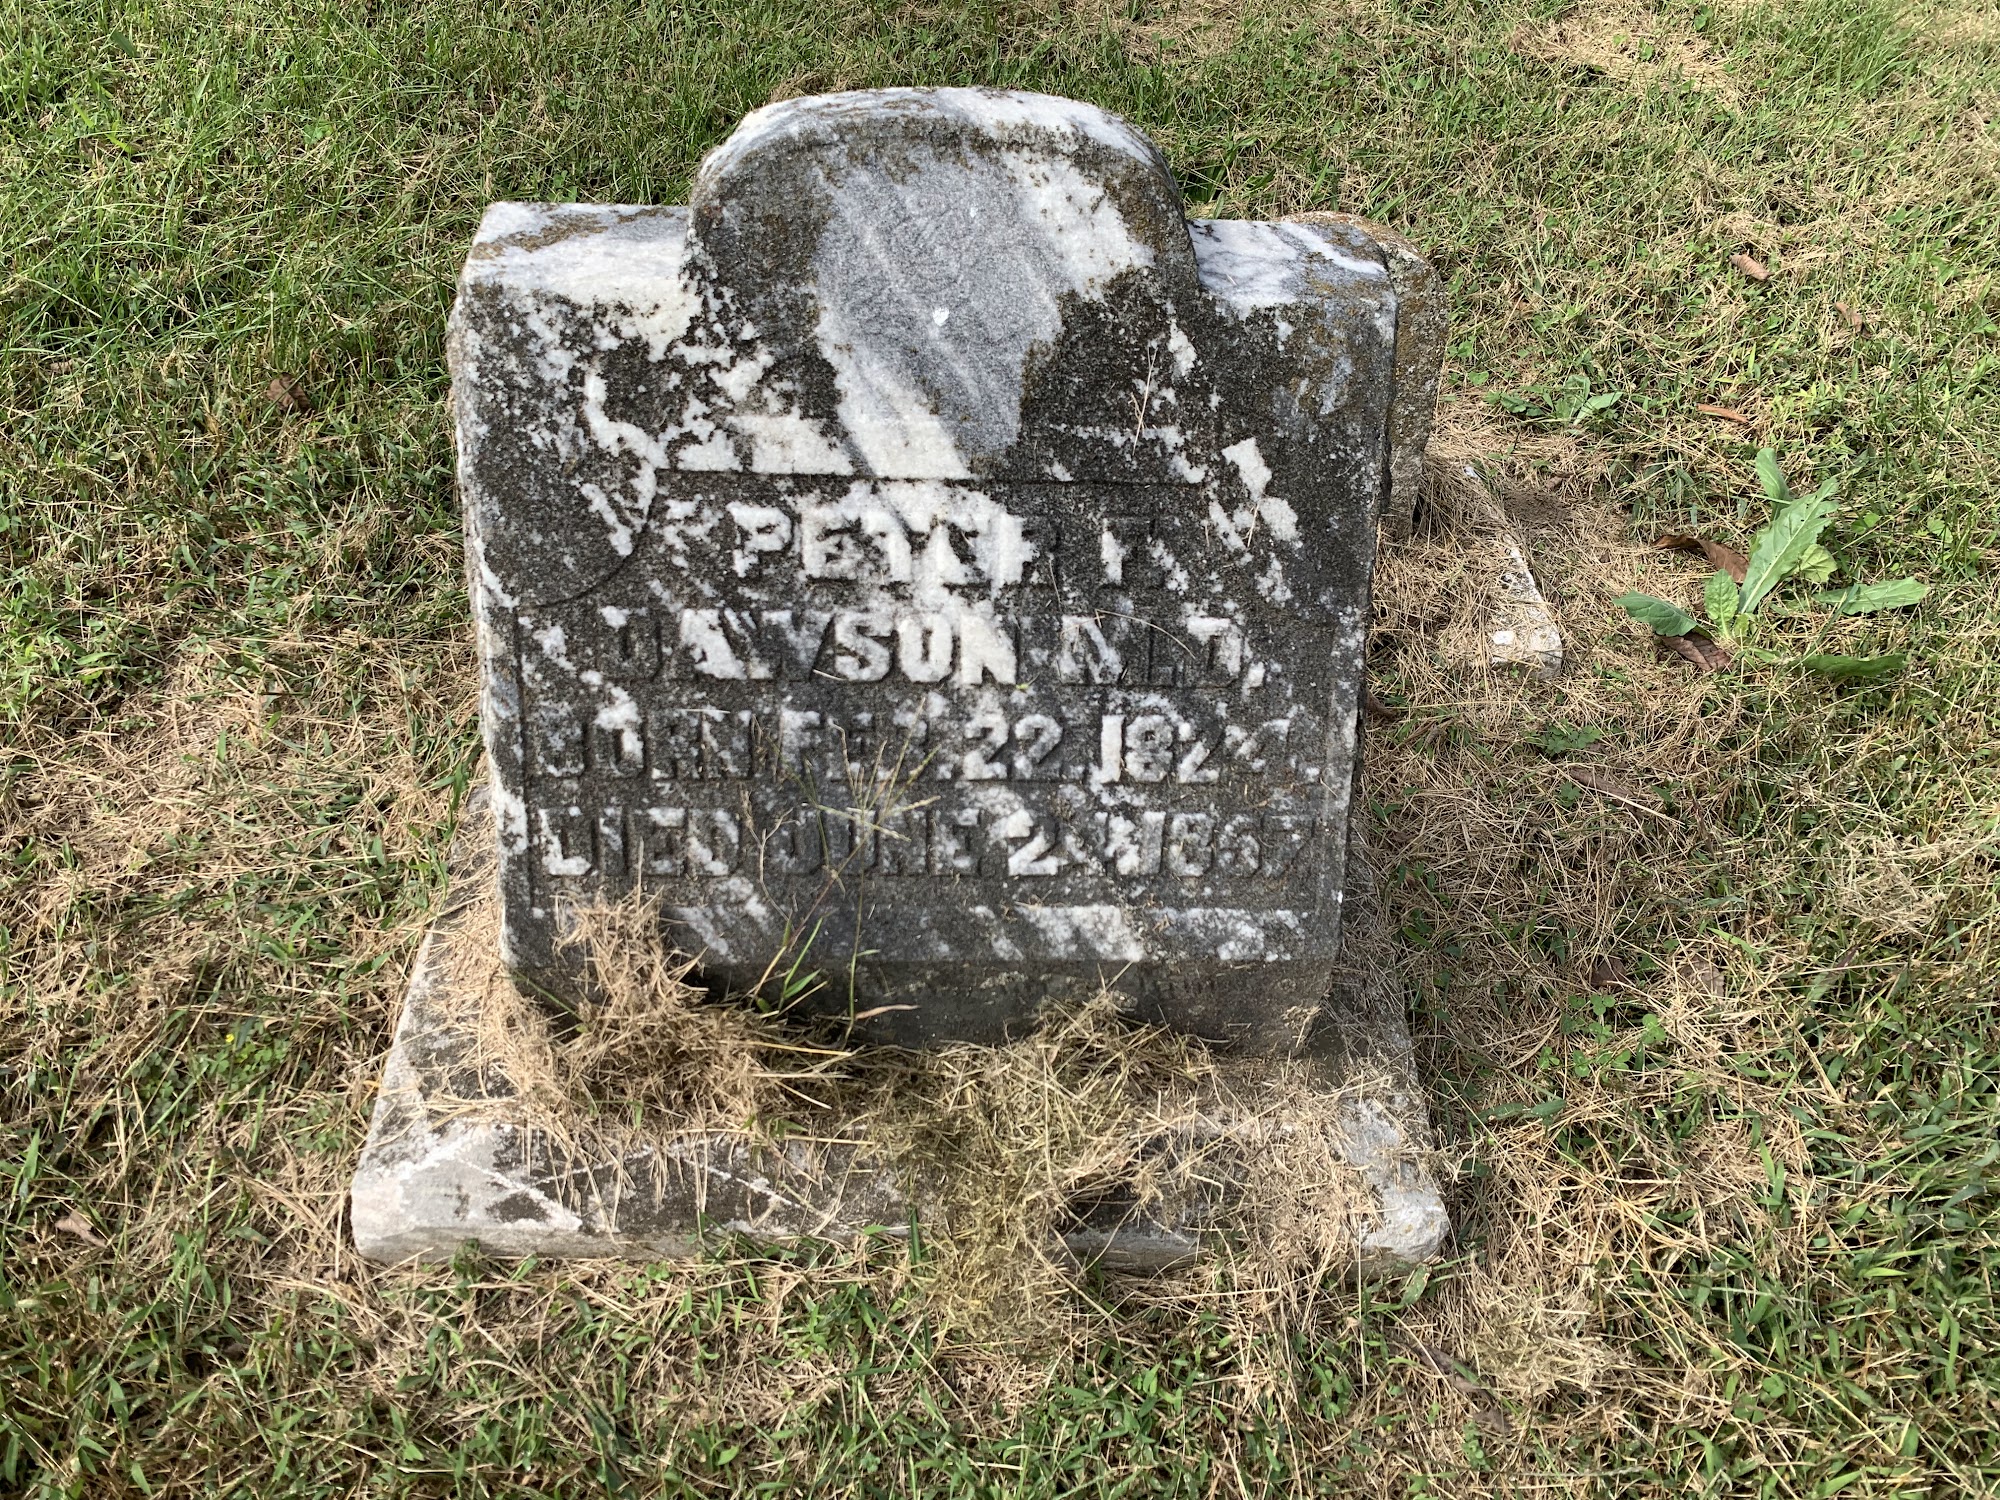 Hubbard Cemetery 1308 Main St, Munfordville Kentucky 42765